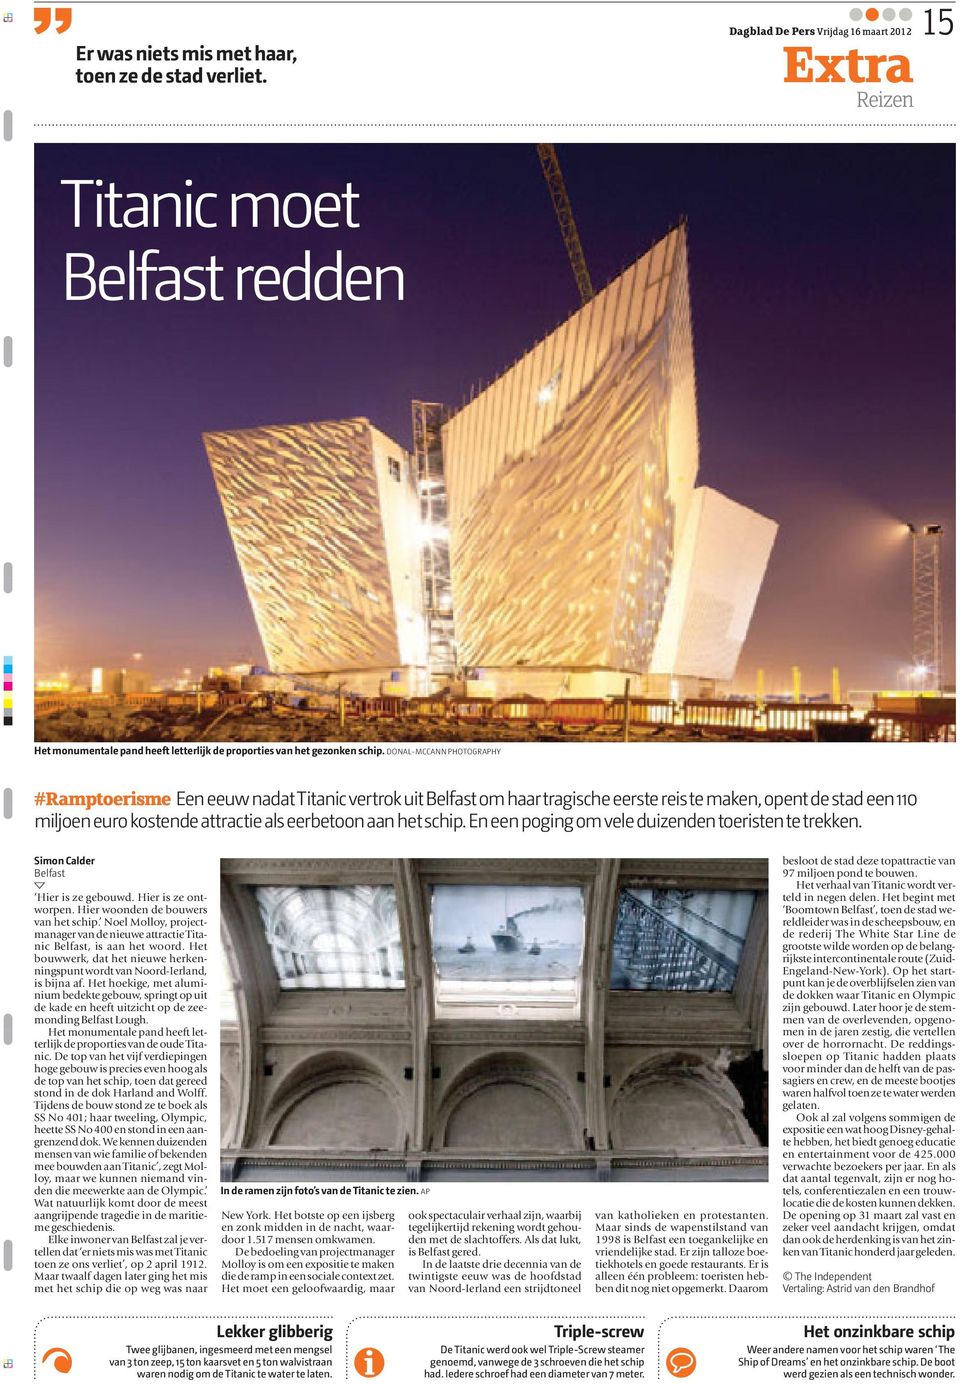 DONAL-MCCANN PHOTOGRAPHY #Ramptoerisme Een eeuw nadat Titanic vertrok uit Belfast om haar tragische eerste reis te maken, opent de stad een 110 miljoen euro kostende attractie als eerbetoon aan het